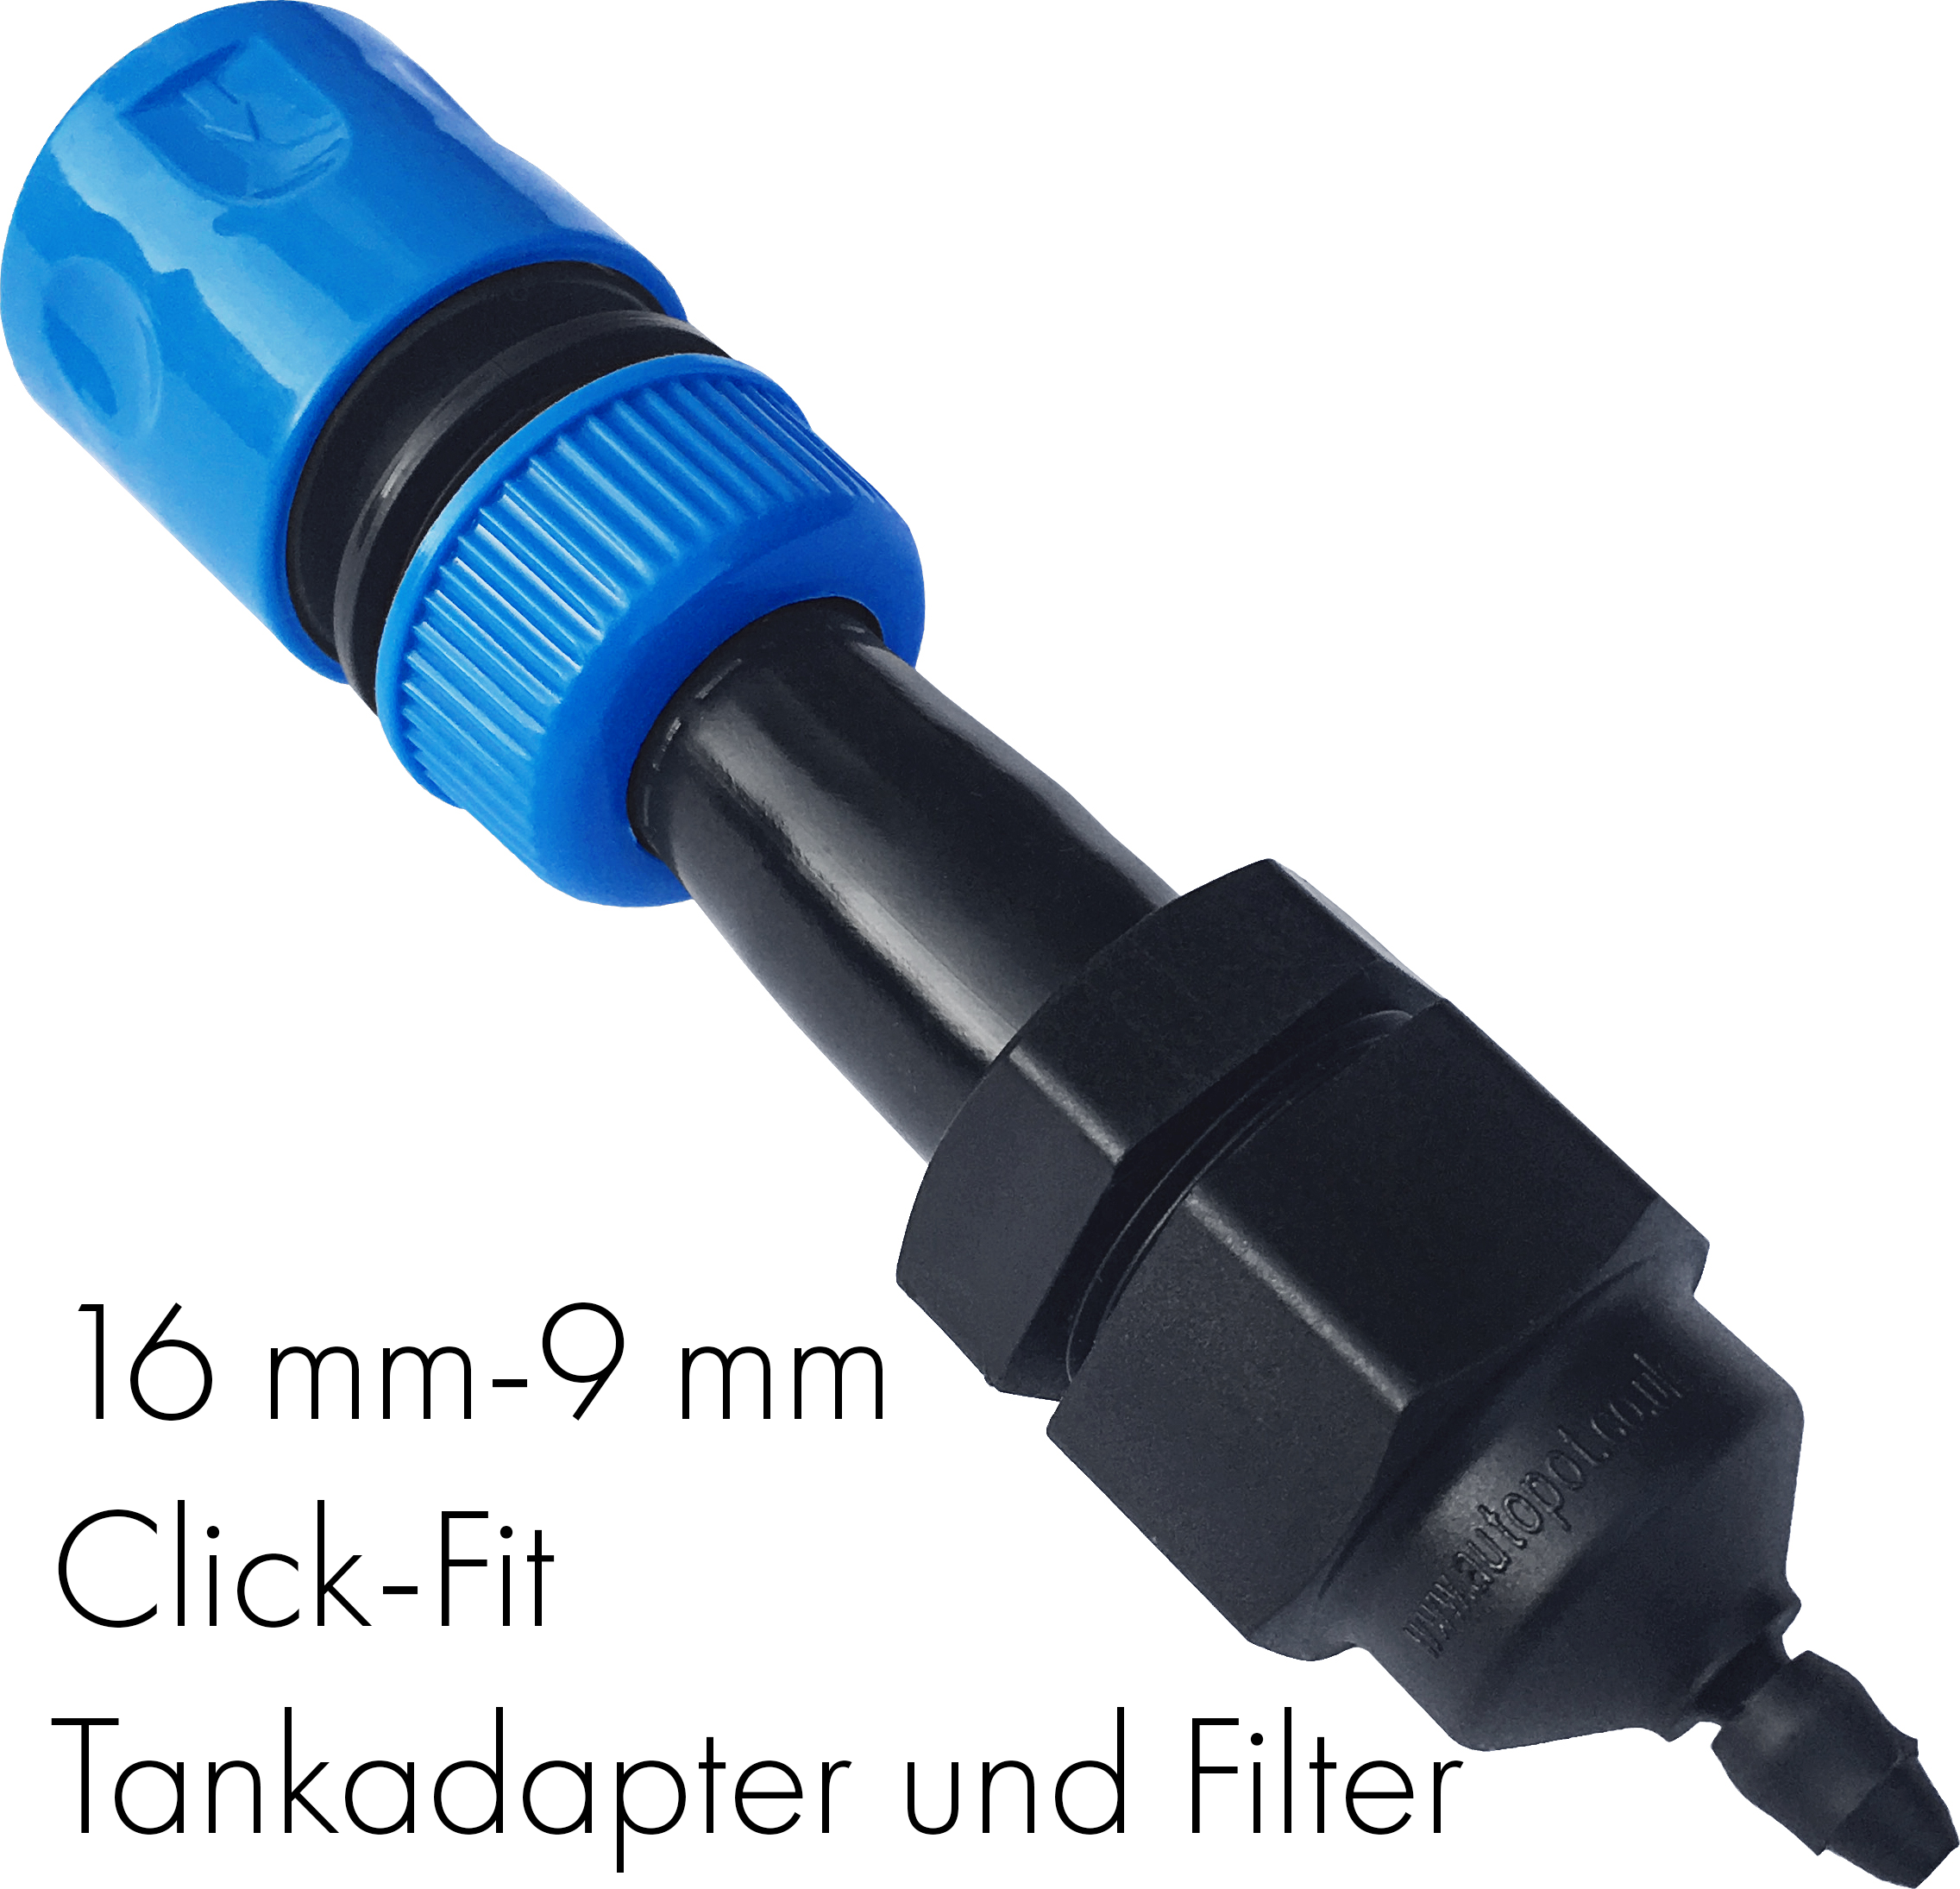 Autopot Ø 16 mm-9 mm Click-Fit Tankadapter und Filter